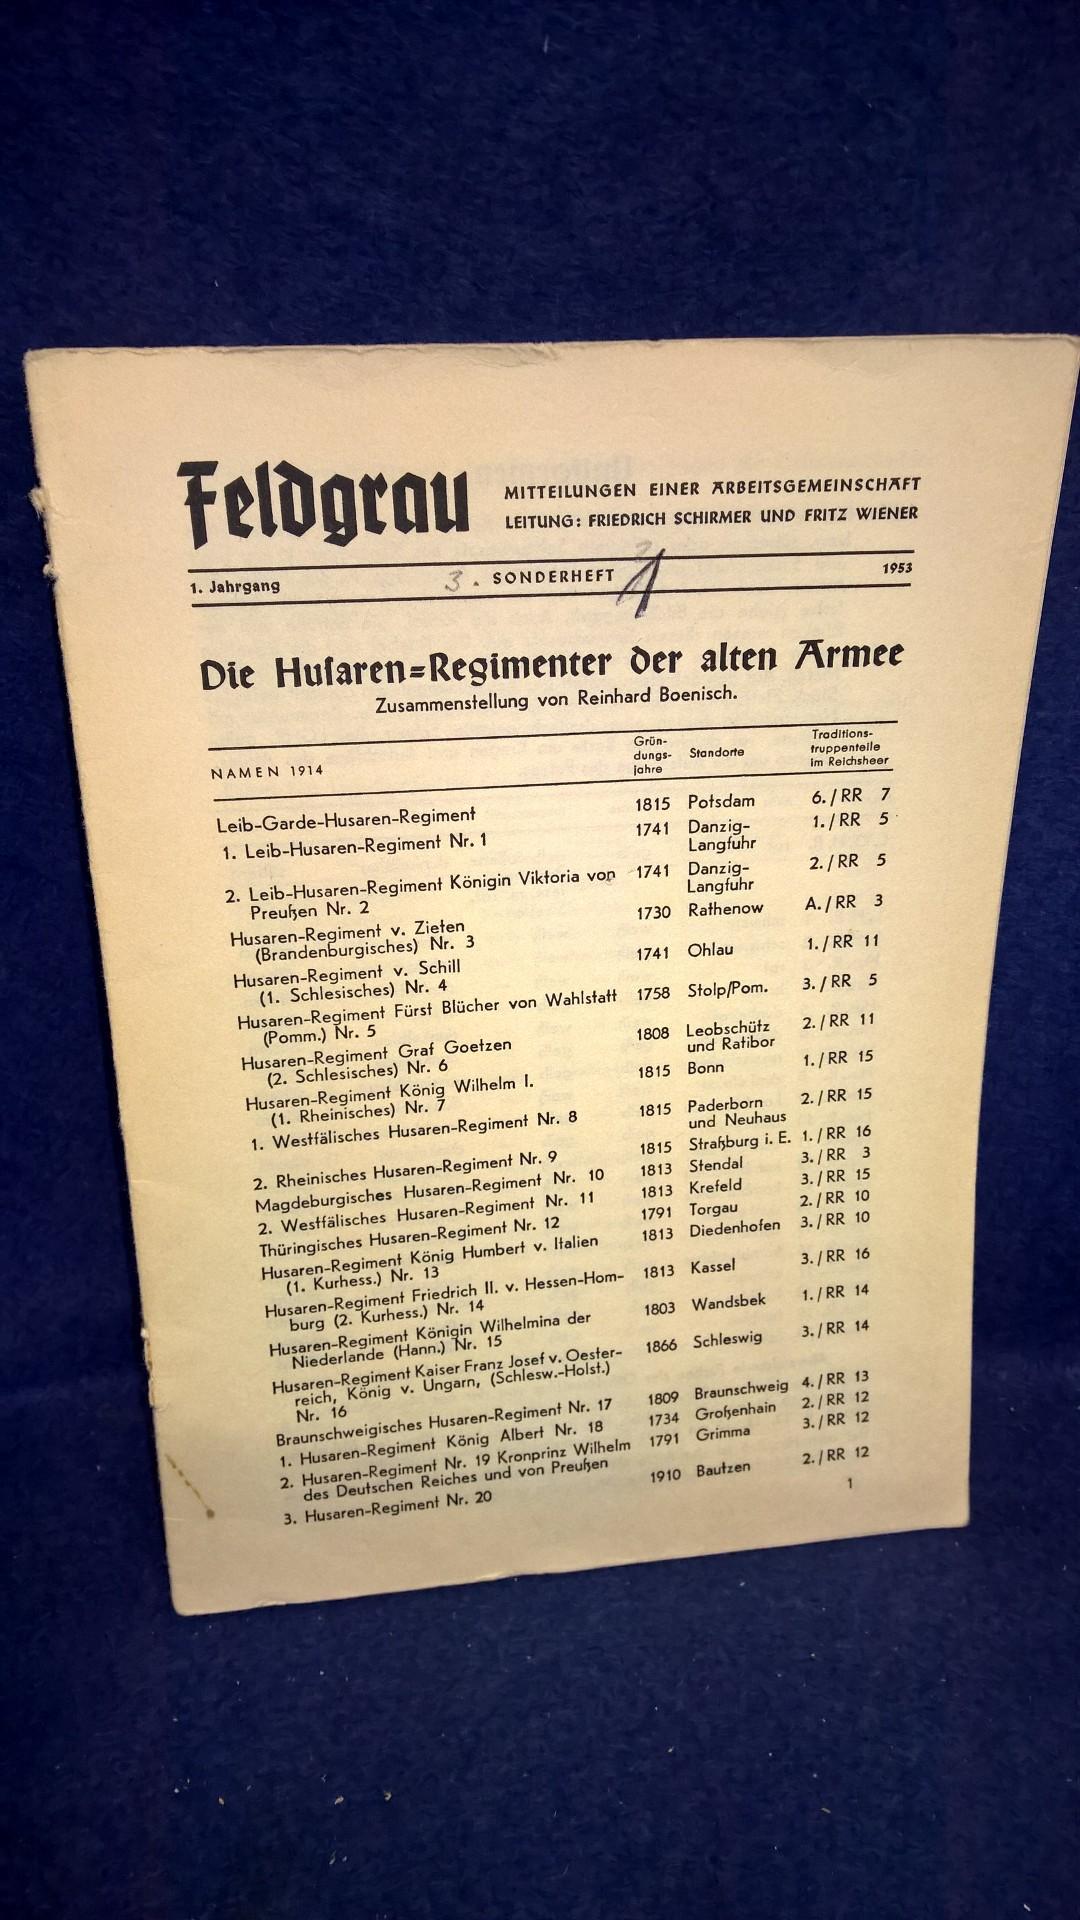 Feldgrau. Mitteilungen einer Arbeitsgemeinschaft. Sonderheft 3: Die Husaren-Regimenter der alten Armee.